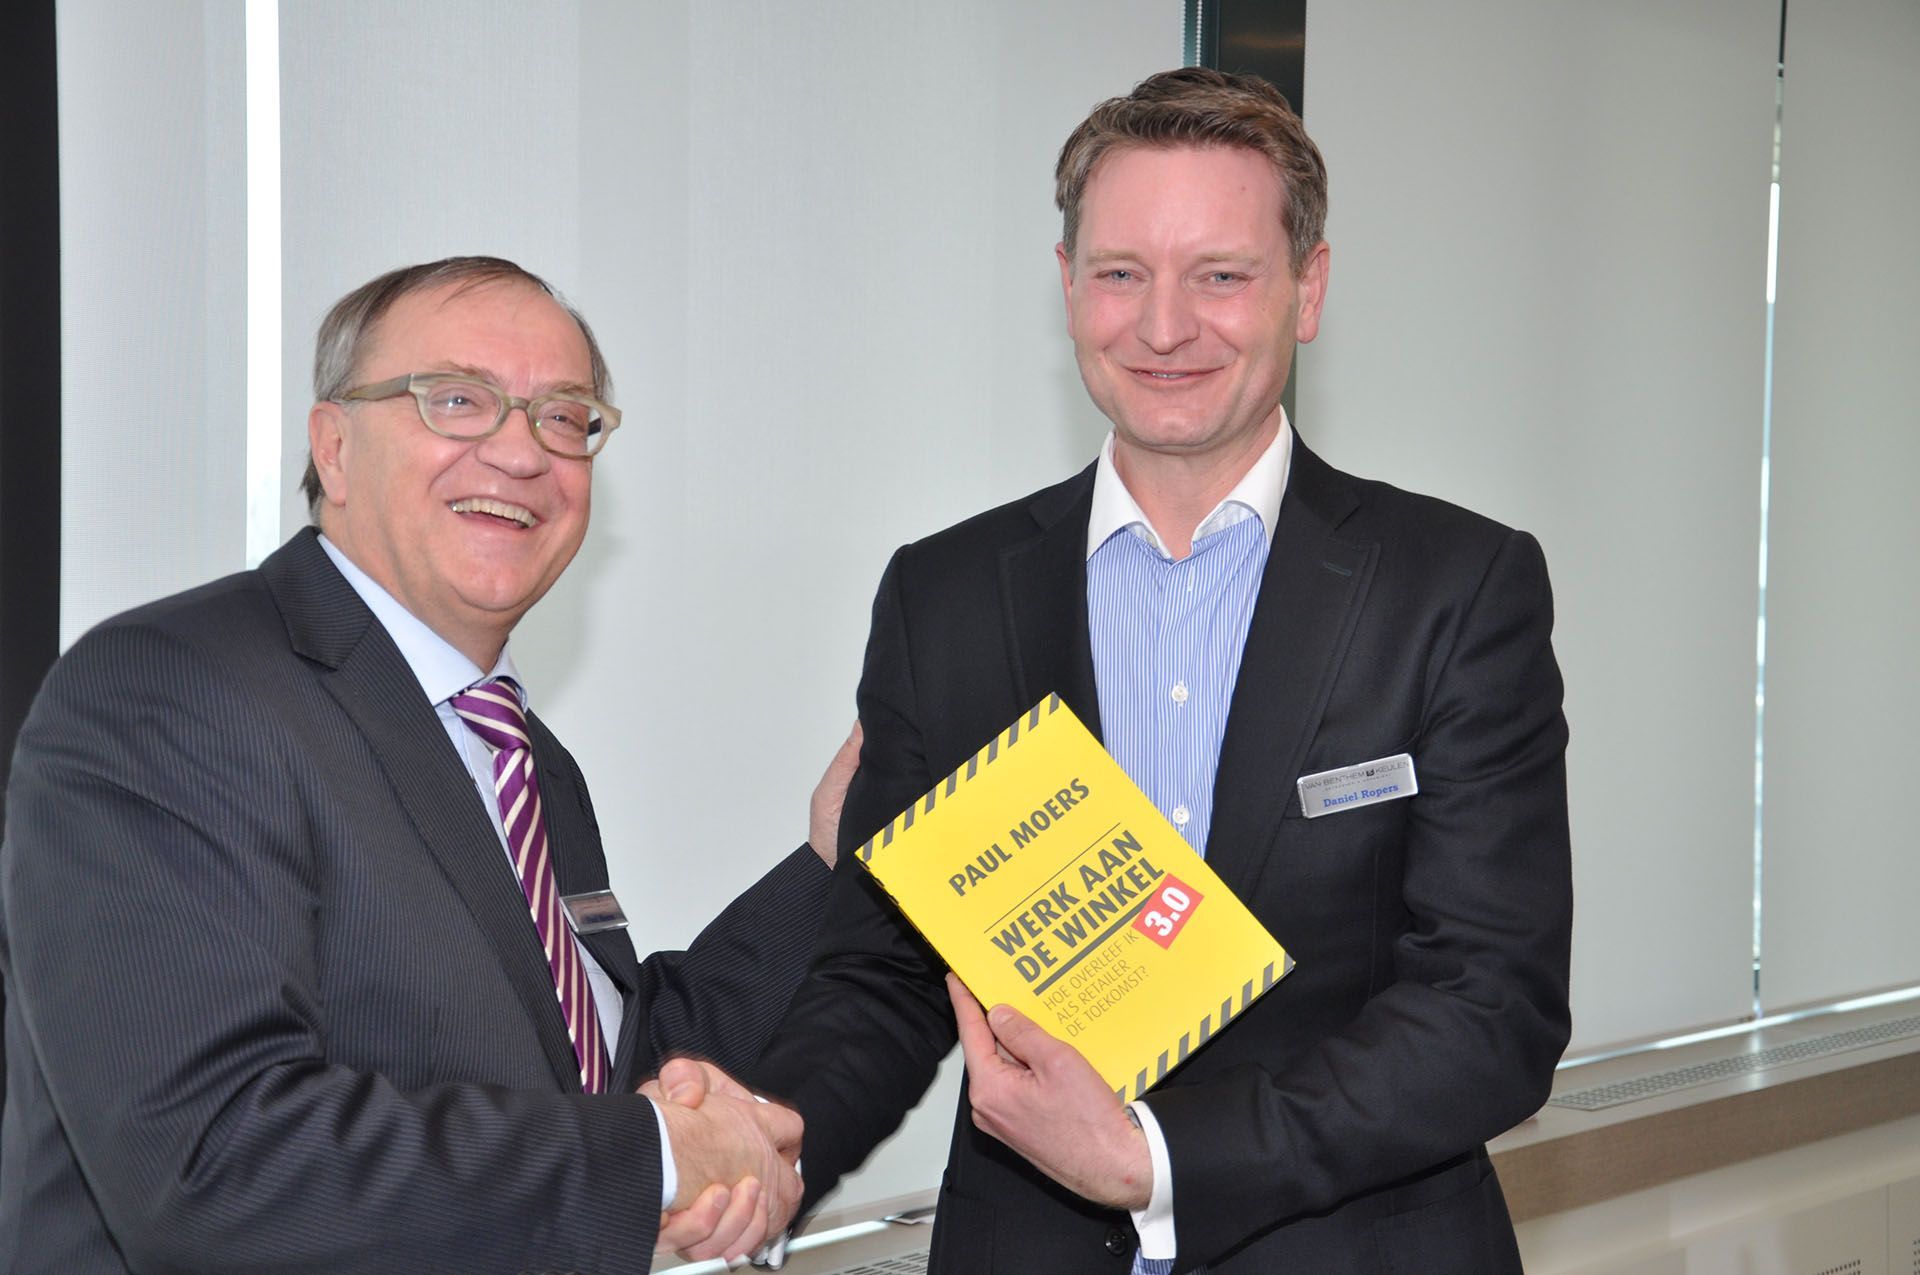 Paul Moers overhandigt boek aan Daniel Ropers van Bol.com bij van Benthem en Keulen in Utrecht